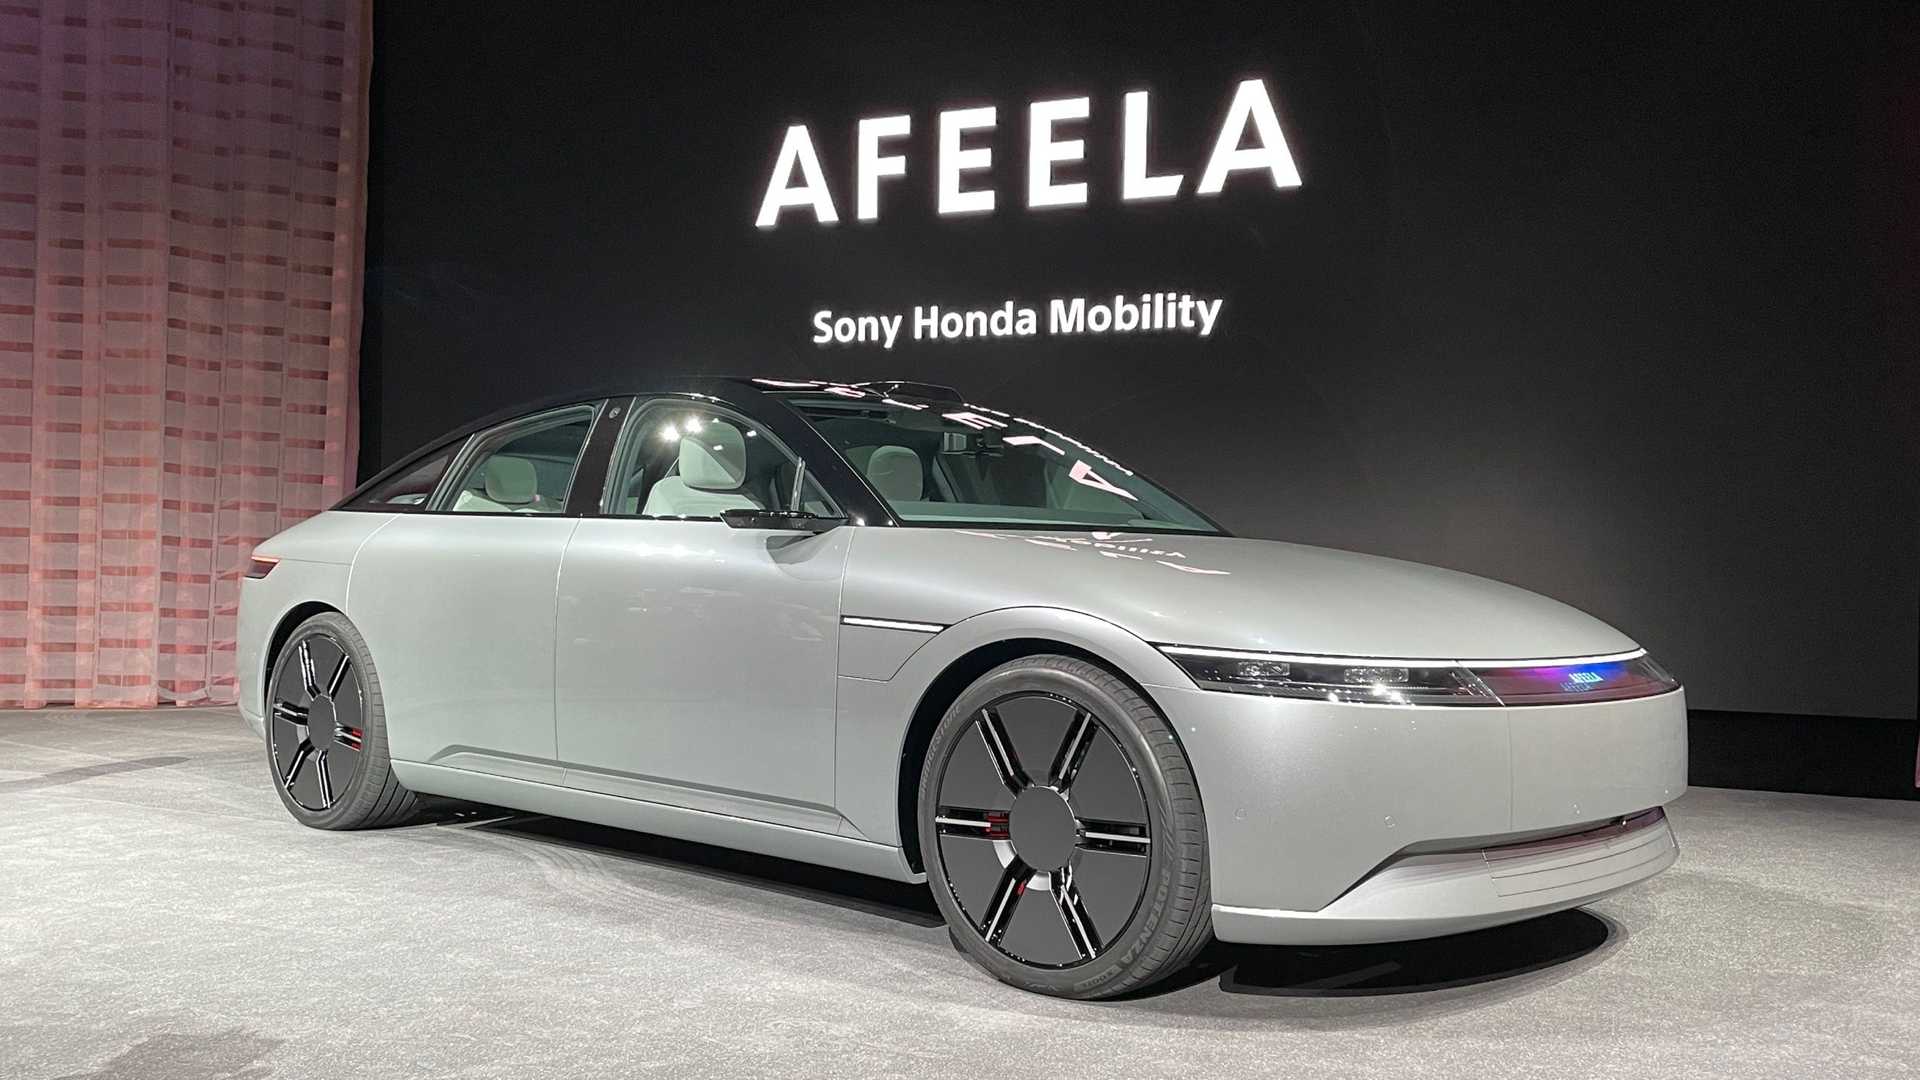 سوني تطلق علامتها التجارية الجديدة للسيارات رسمياً بالتعاون مع هوندا